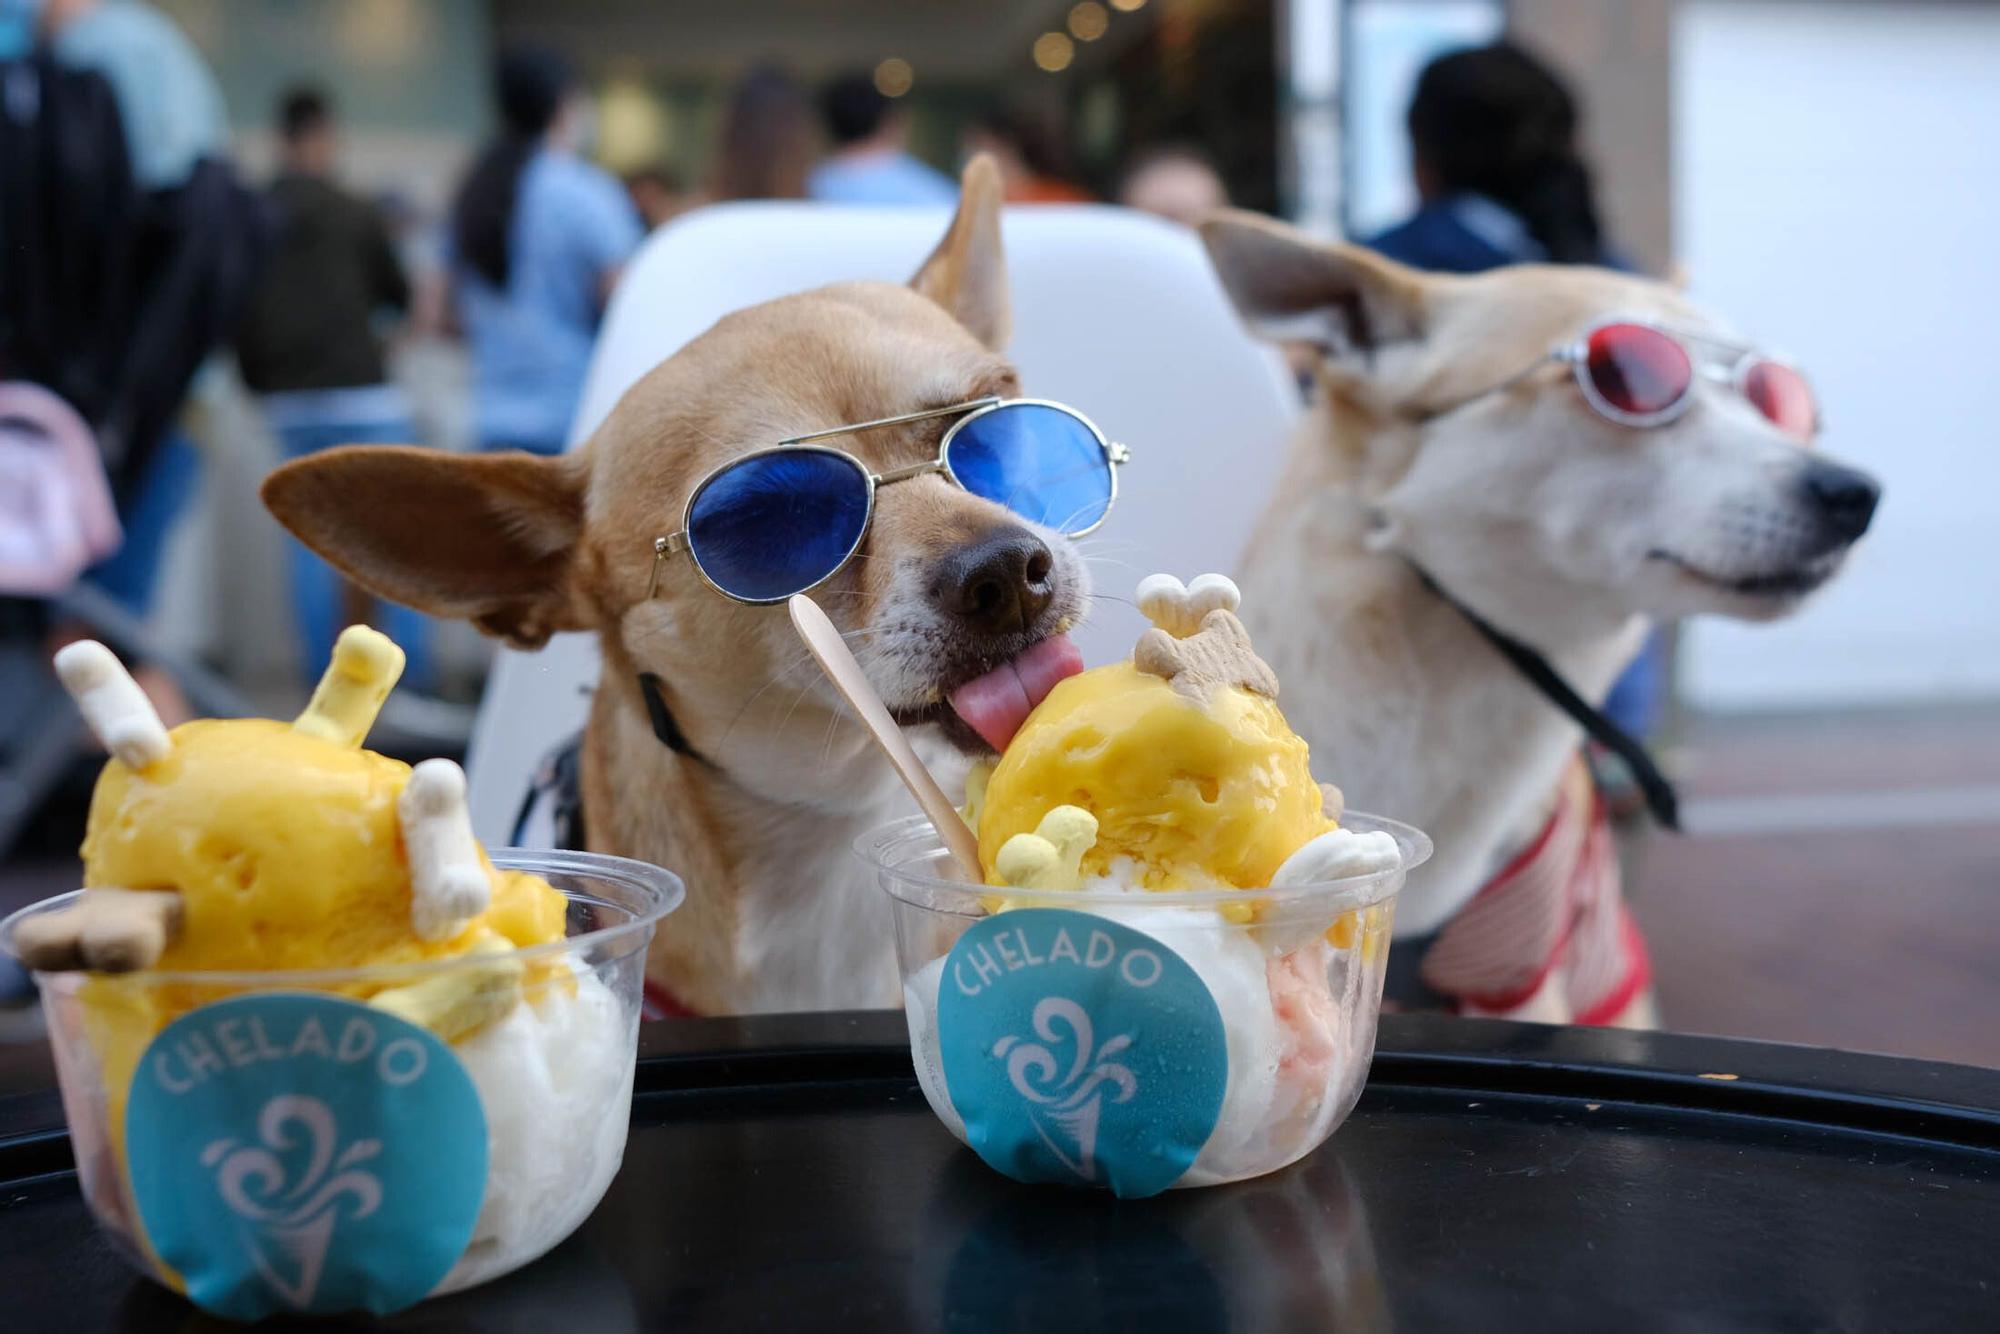 Una heladería de la Cícer vende entre sus productos helados aptos para perros